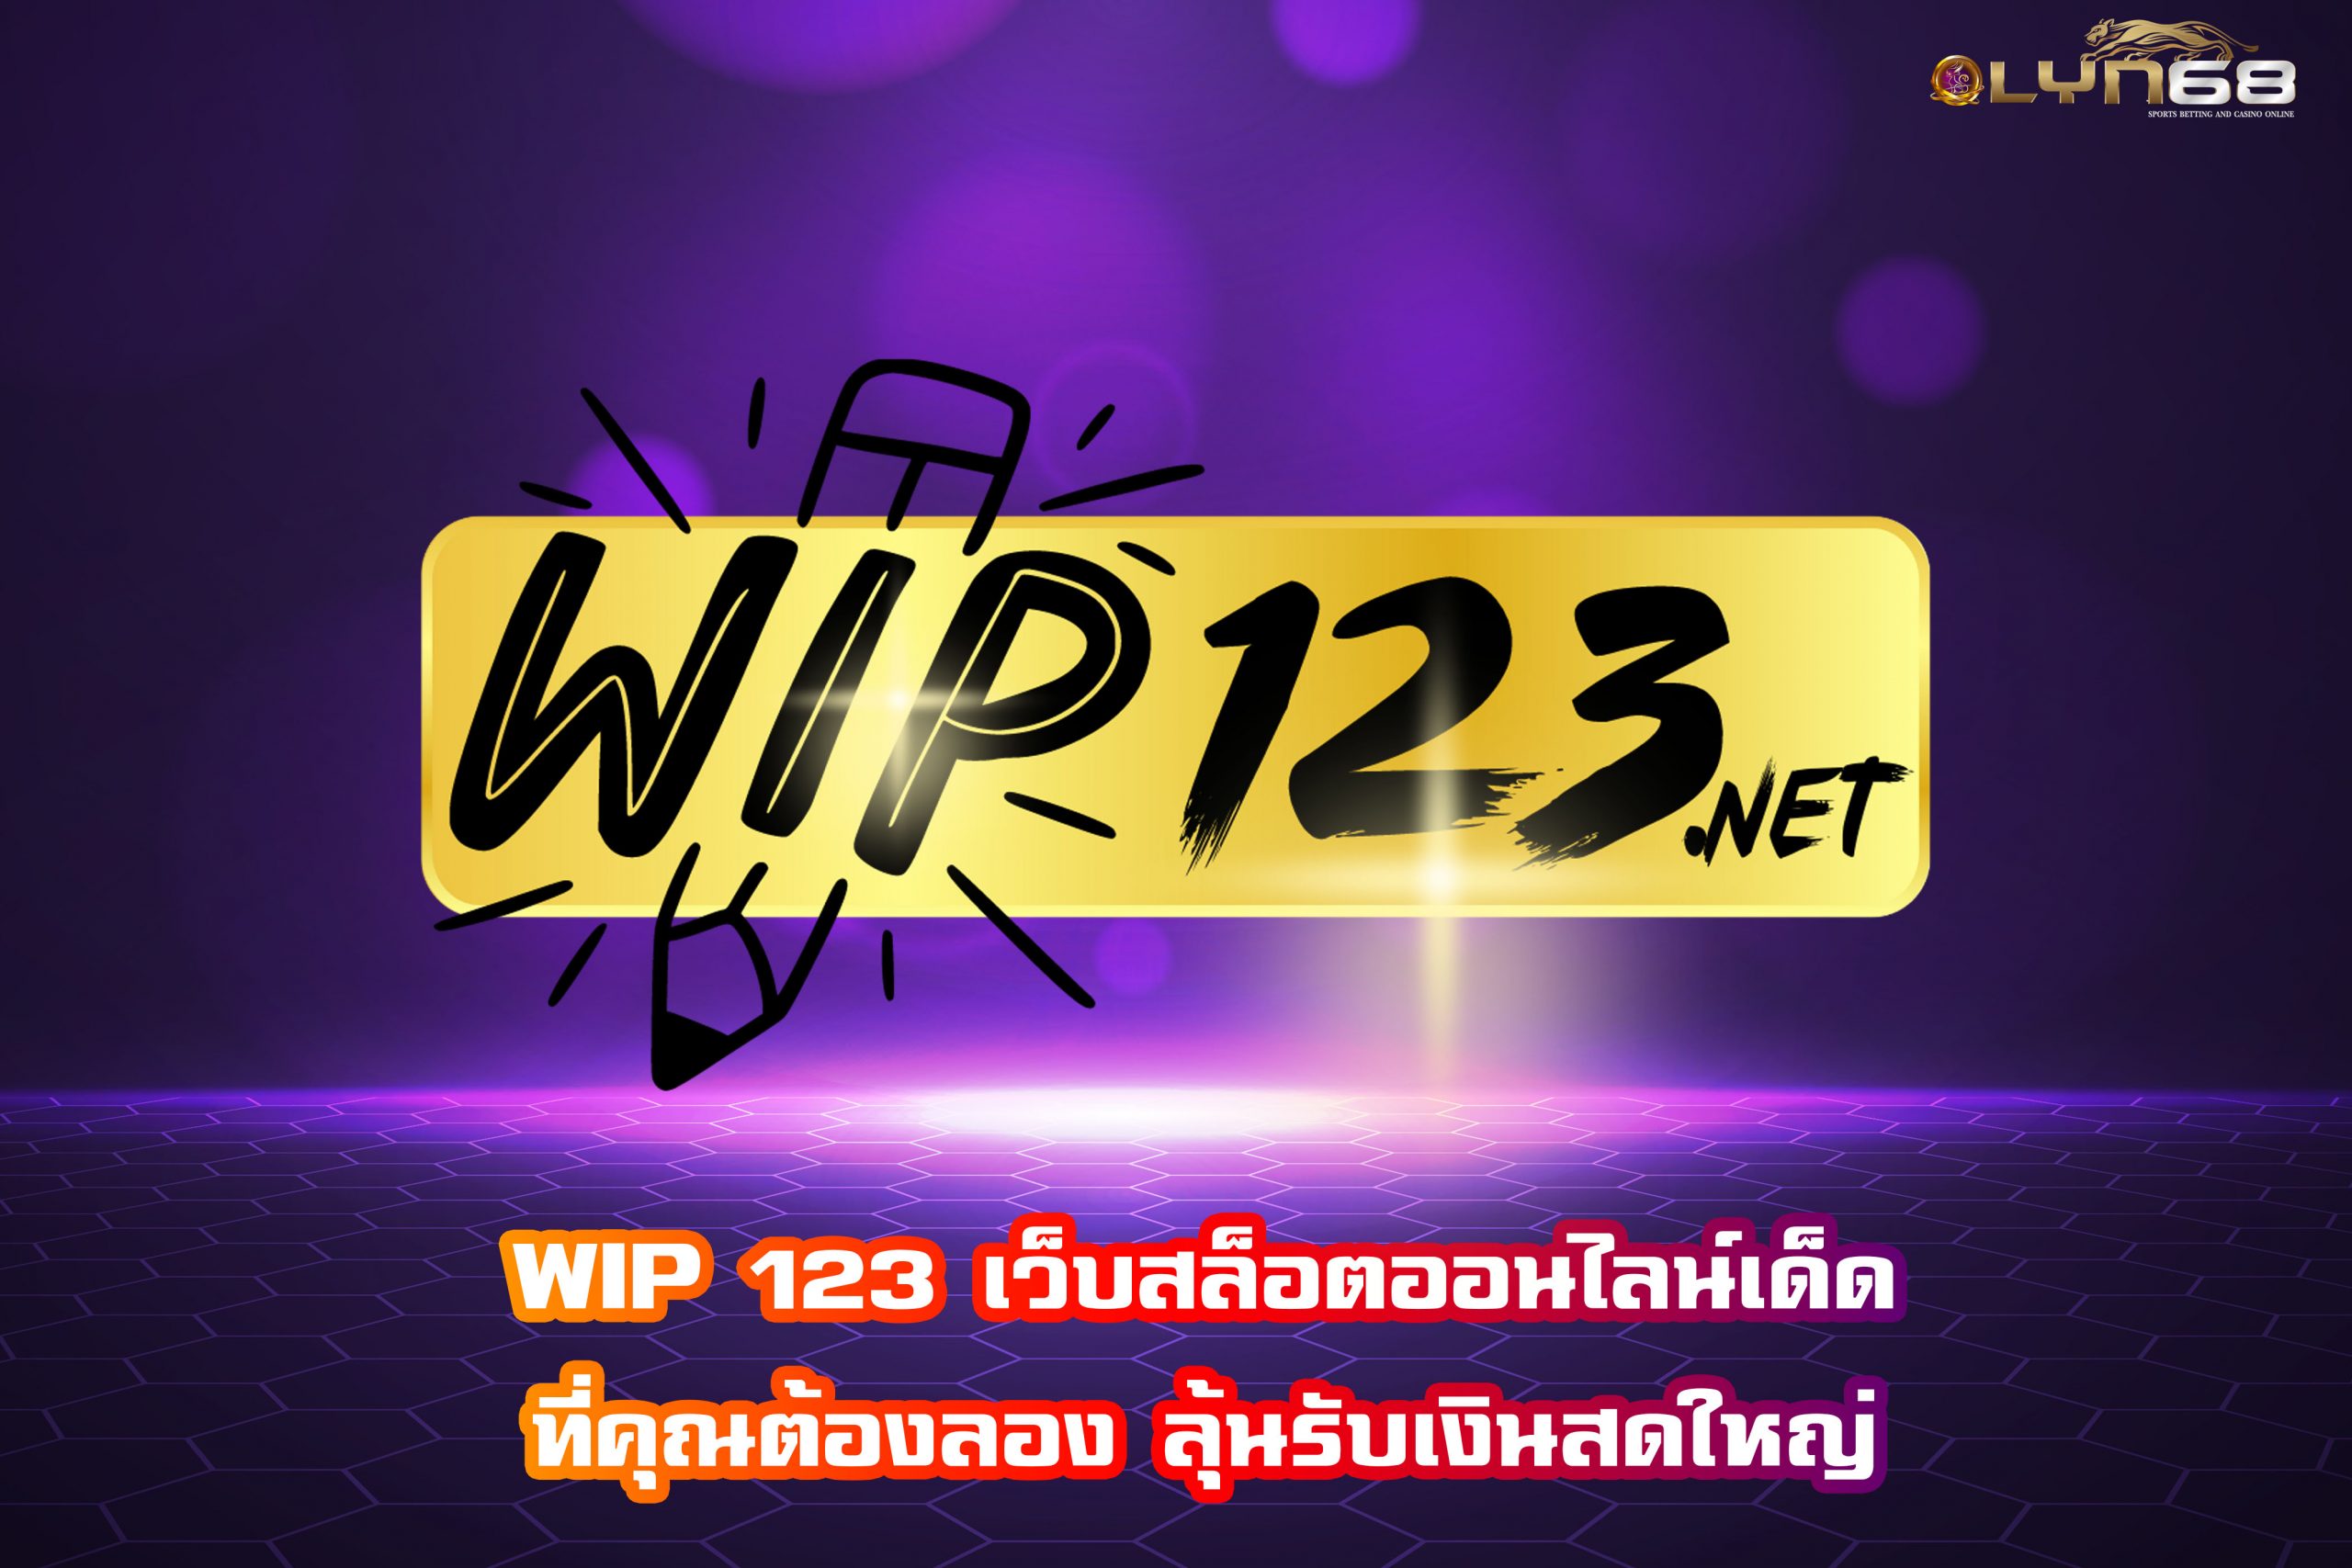 WIP 123 เว็บสล็อตออนไลน์เด็ดที่คุณต้องลอง ลุ้นรับเงินสดใหญ่